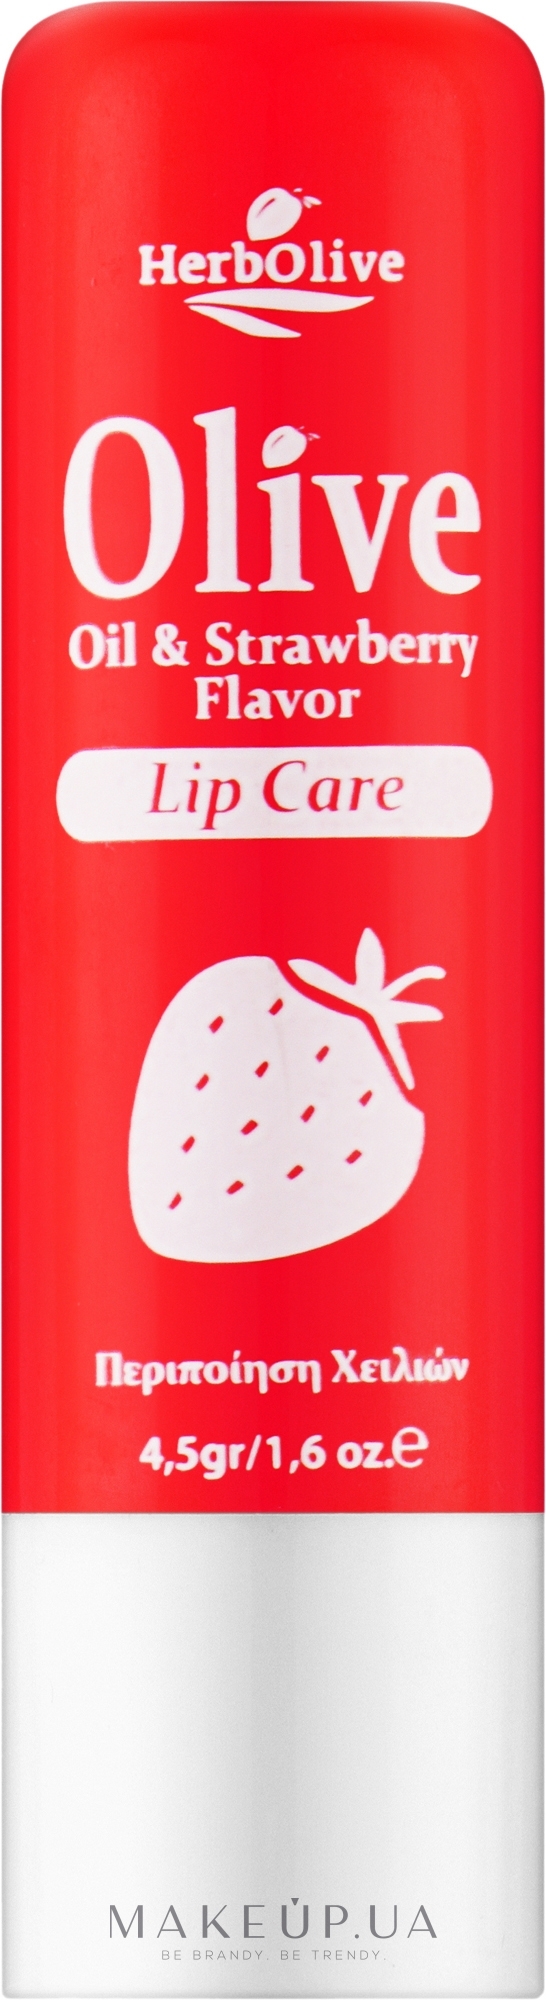 Бальзам для губ з полуницею - Madis HerbOlive Lip Care — фото 4.5g